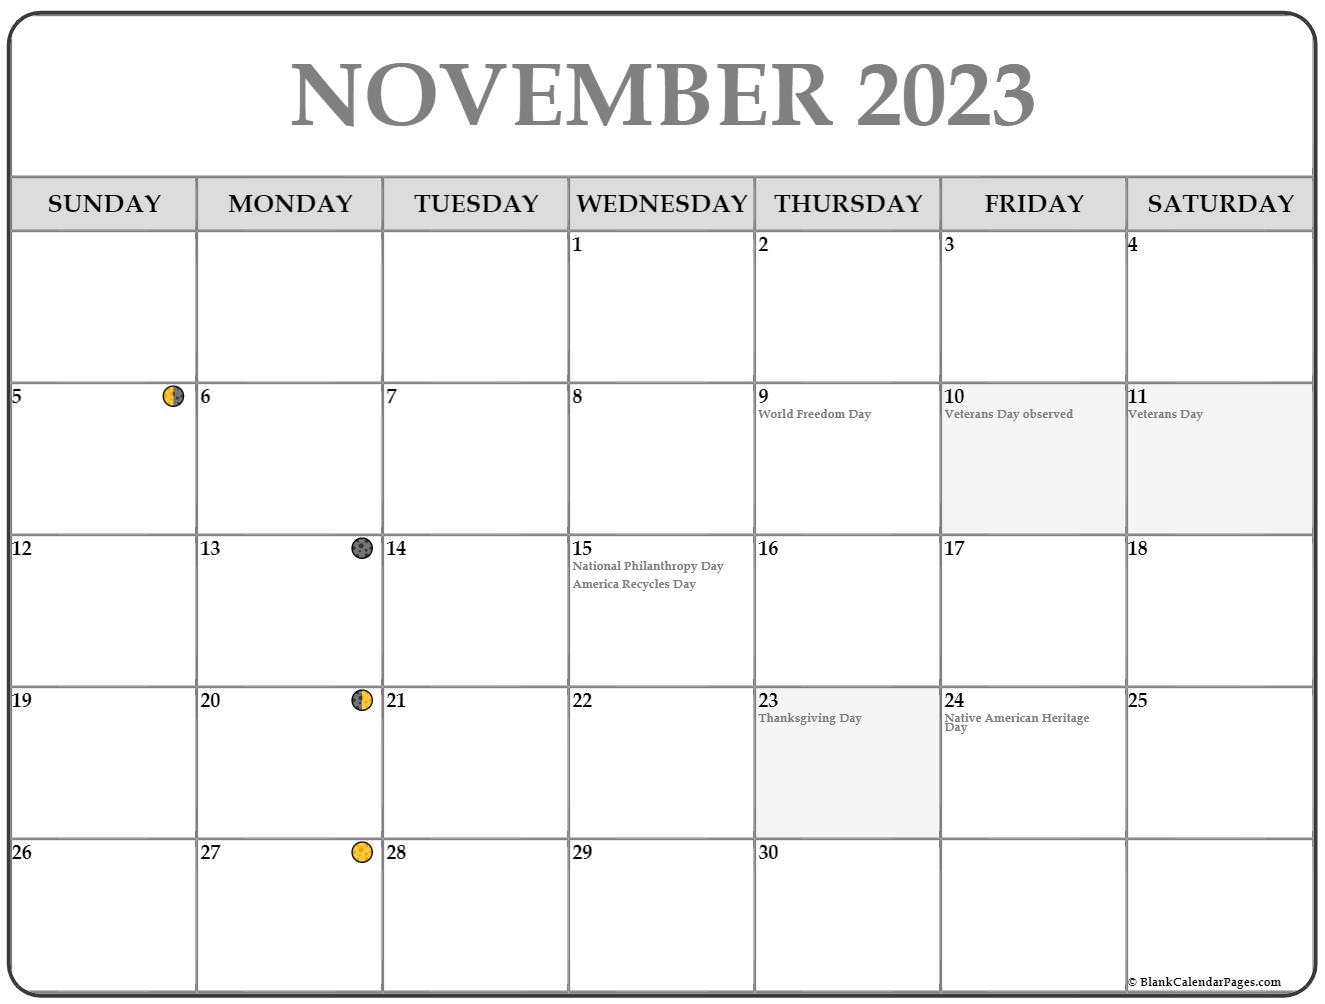 november-2023-lunar-calendar-moon-phase-calendar